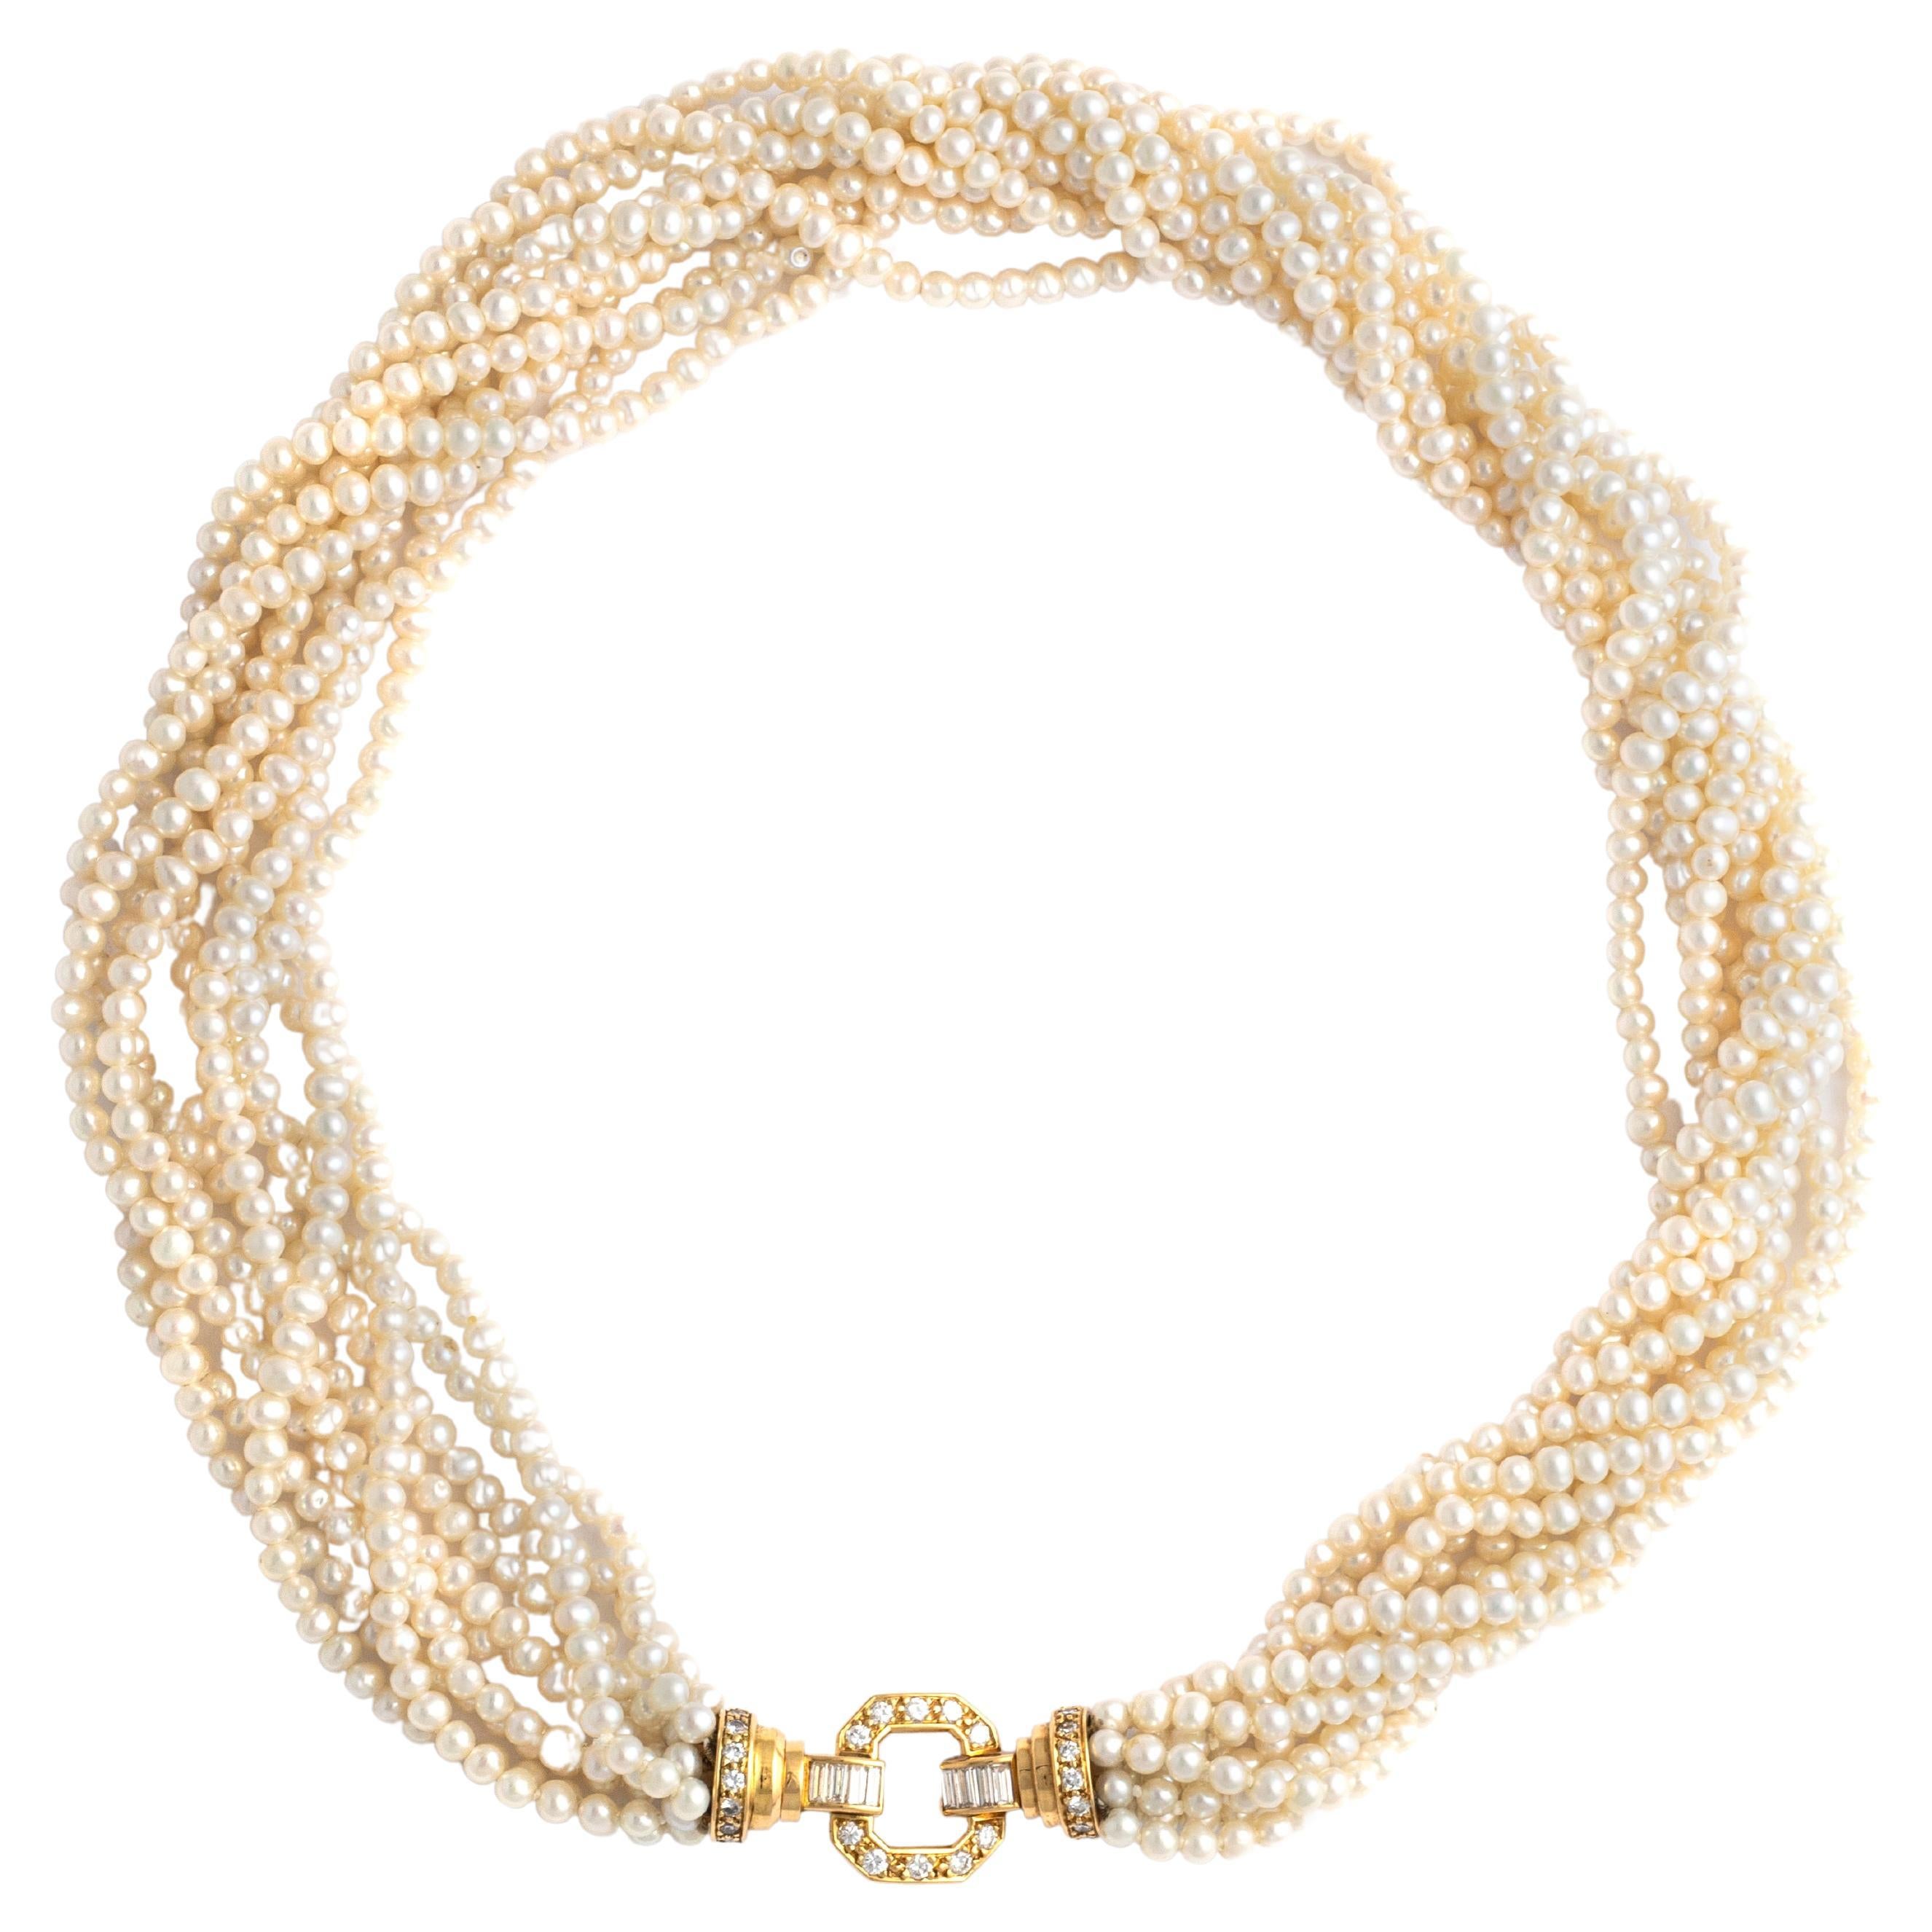 Collier de perles de culture composé de 10 rangs de perles retenant un fermoir en or jaune 18 carats serti de 28 diamants ronds et de 8 diamants baguettes.

Les rangs de perles lustrées créent une cascade luxueuse et volumineuse, encadrant le